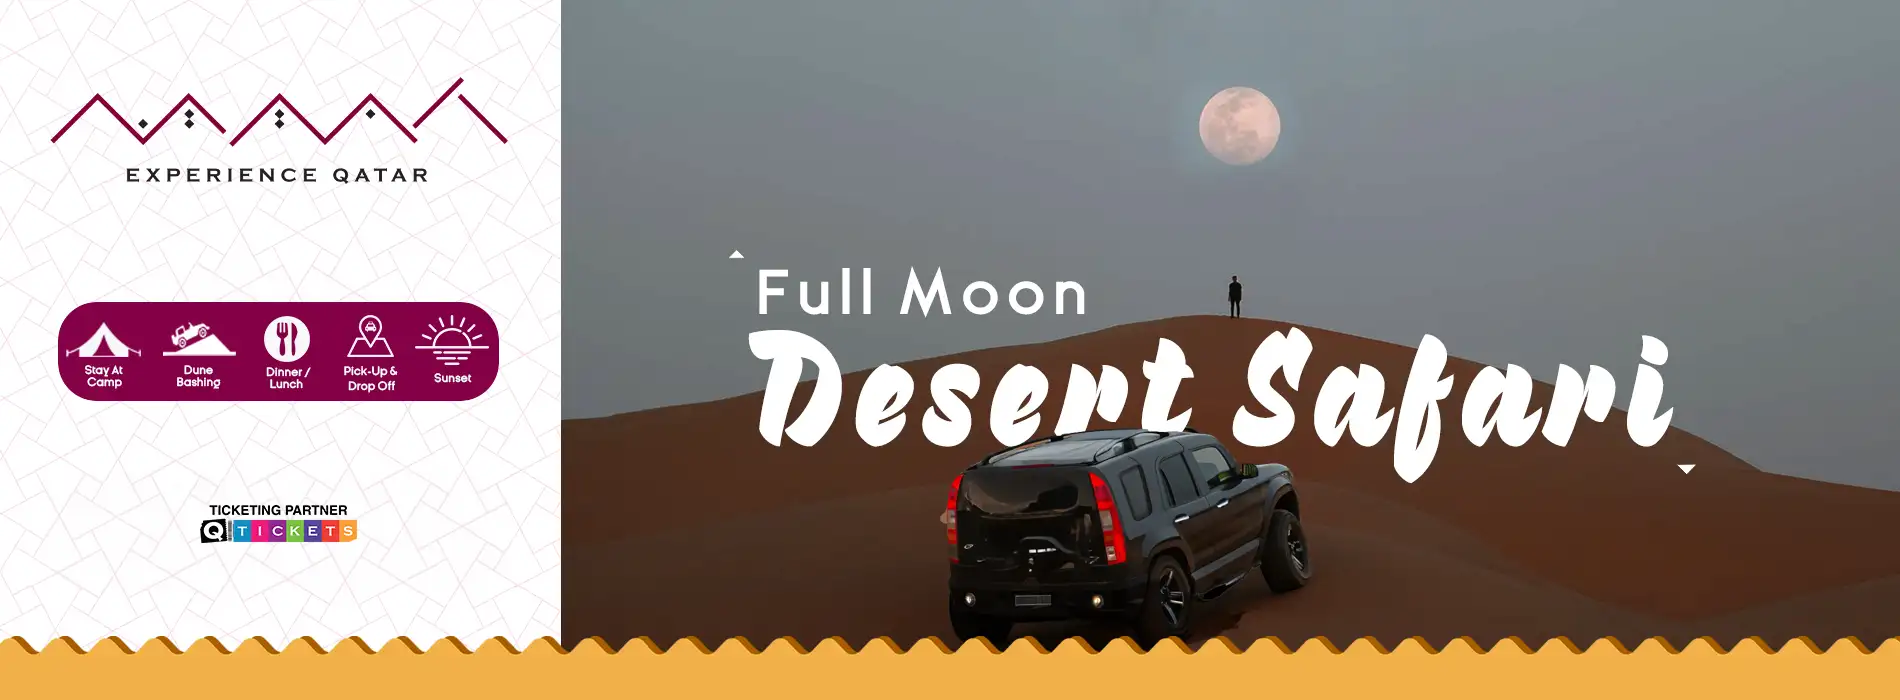 Full Moon Desert Safari